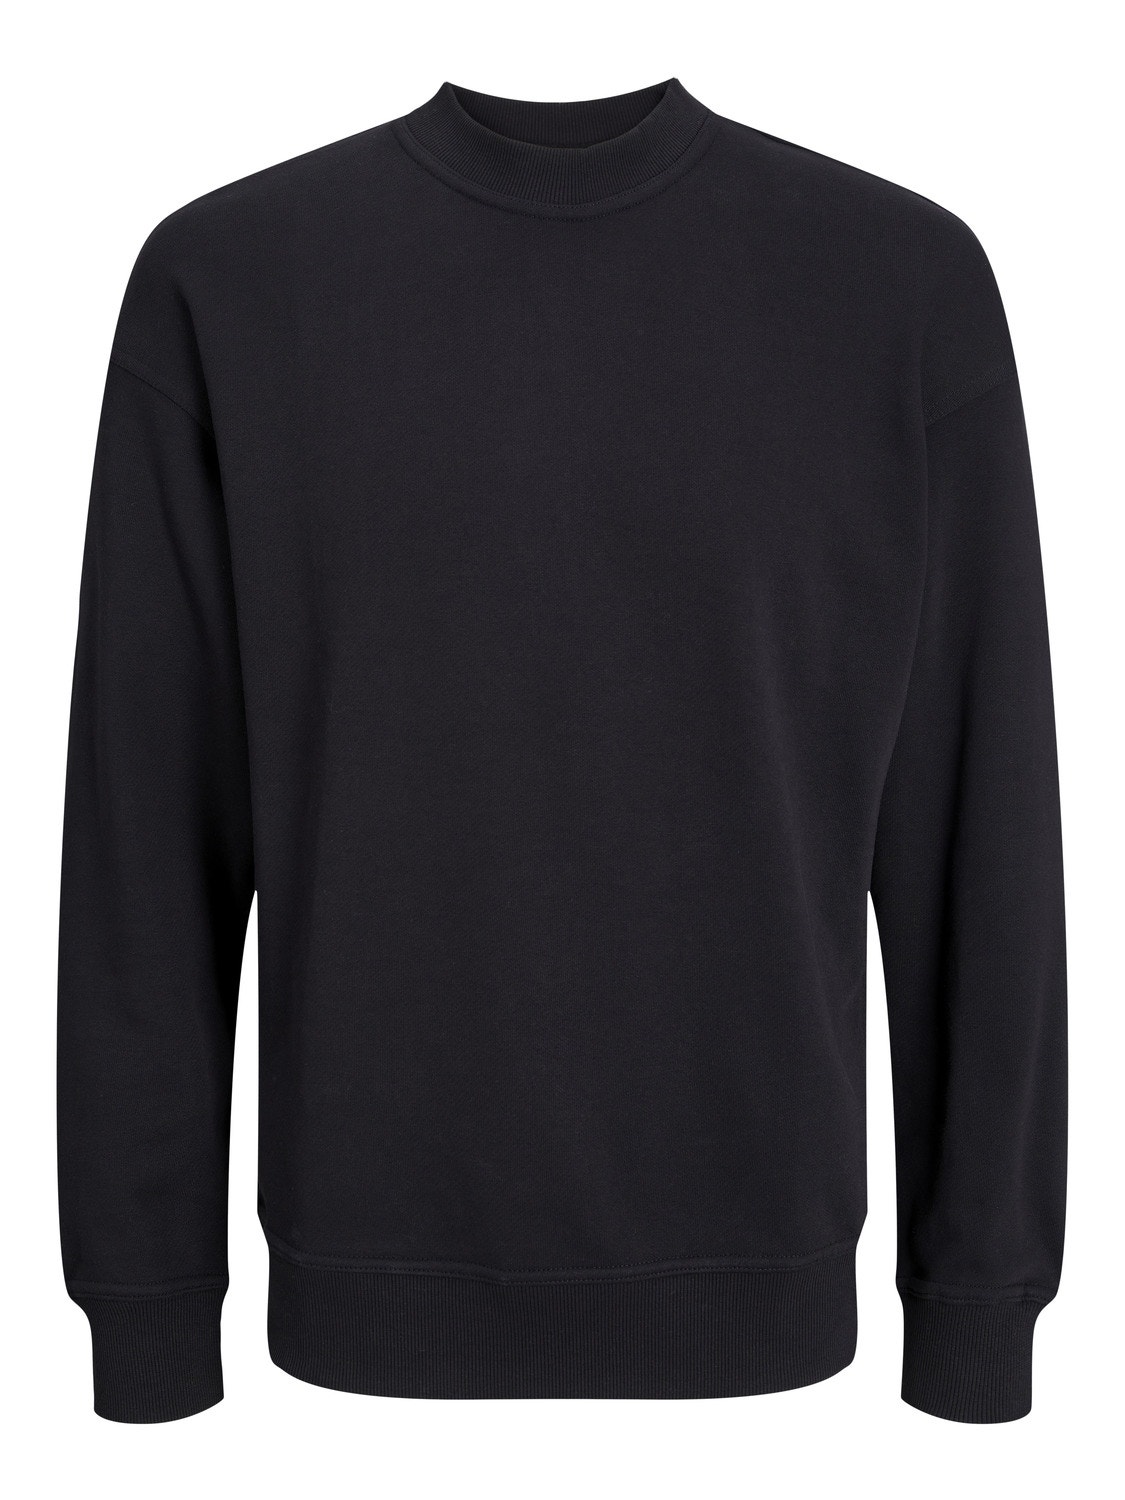 Jack & Jones Oversize Fit Crew neck Set in sleeves Sweatshirt -Black - 12251330